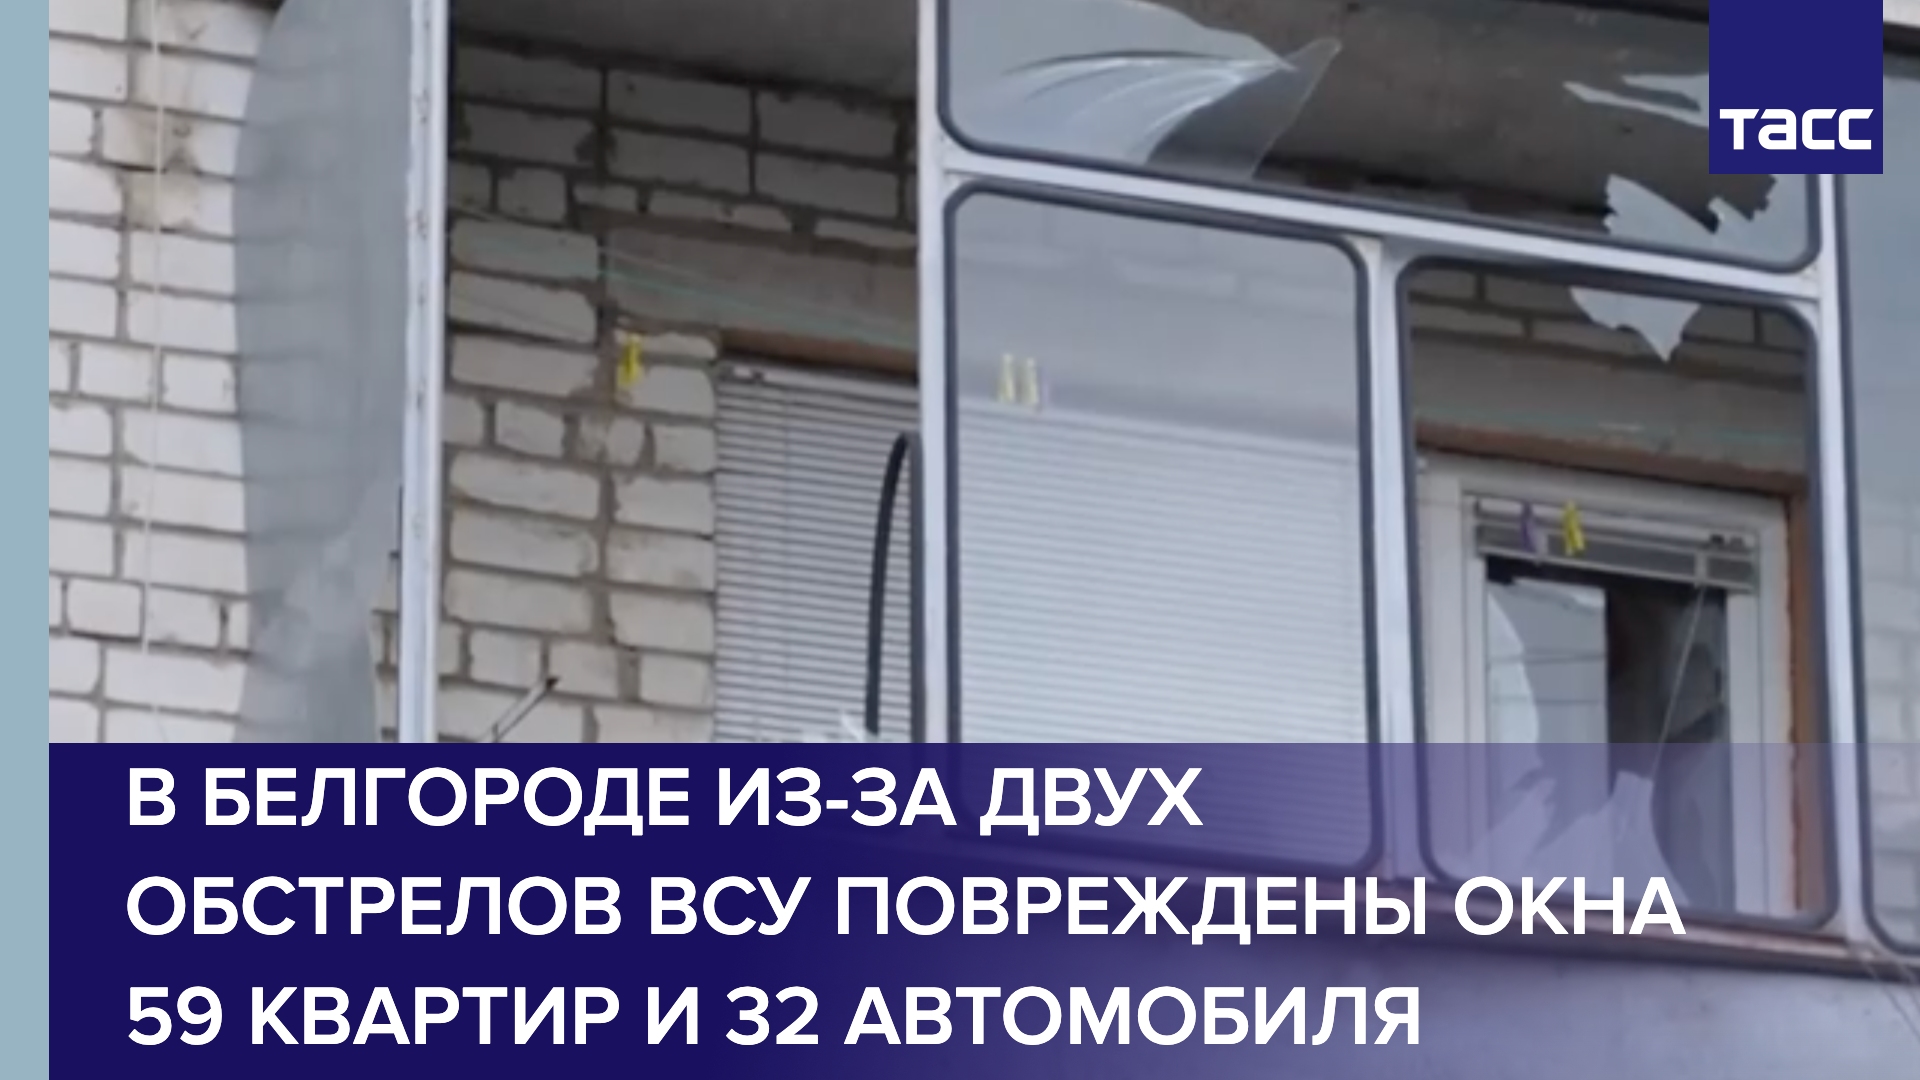 В Белгороде из-за двух обстрелов ВСУ повреждены окна 59 квартир и 32 автомобиля